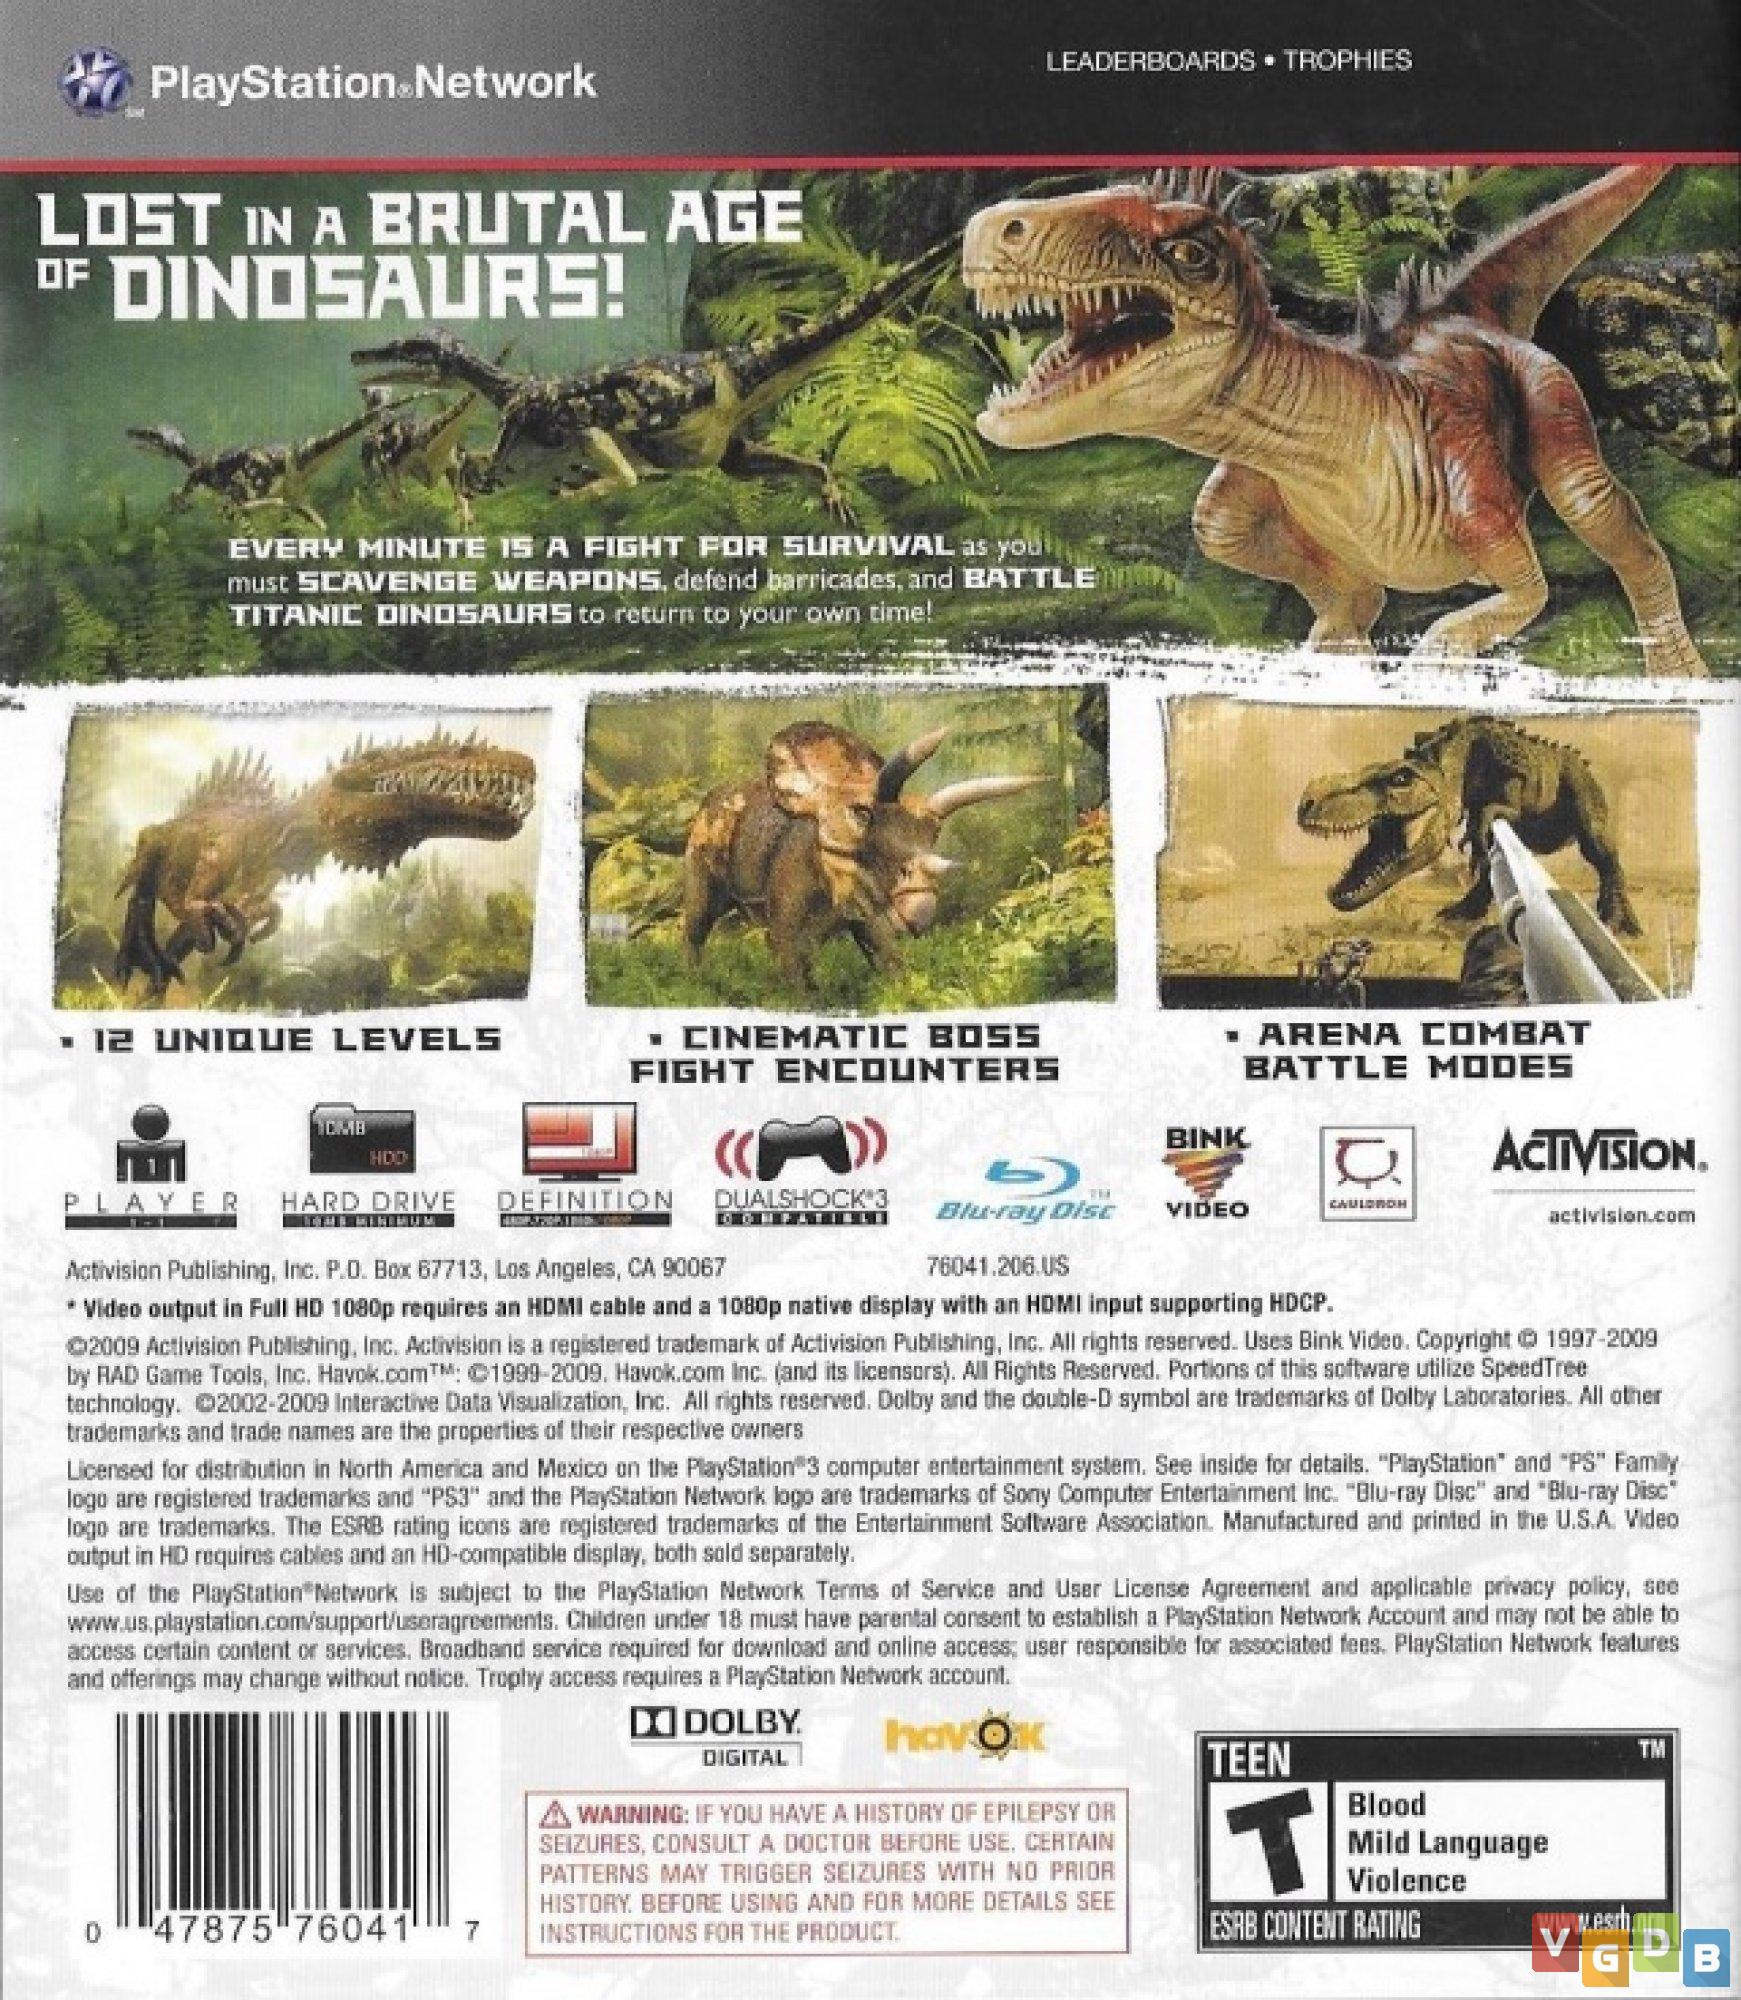 Jurassic: The Hunted (PS2) [ C0522 ] - Bem vindo(a) à nossa loja